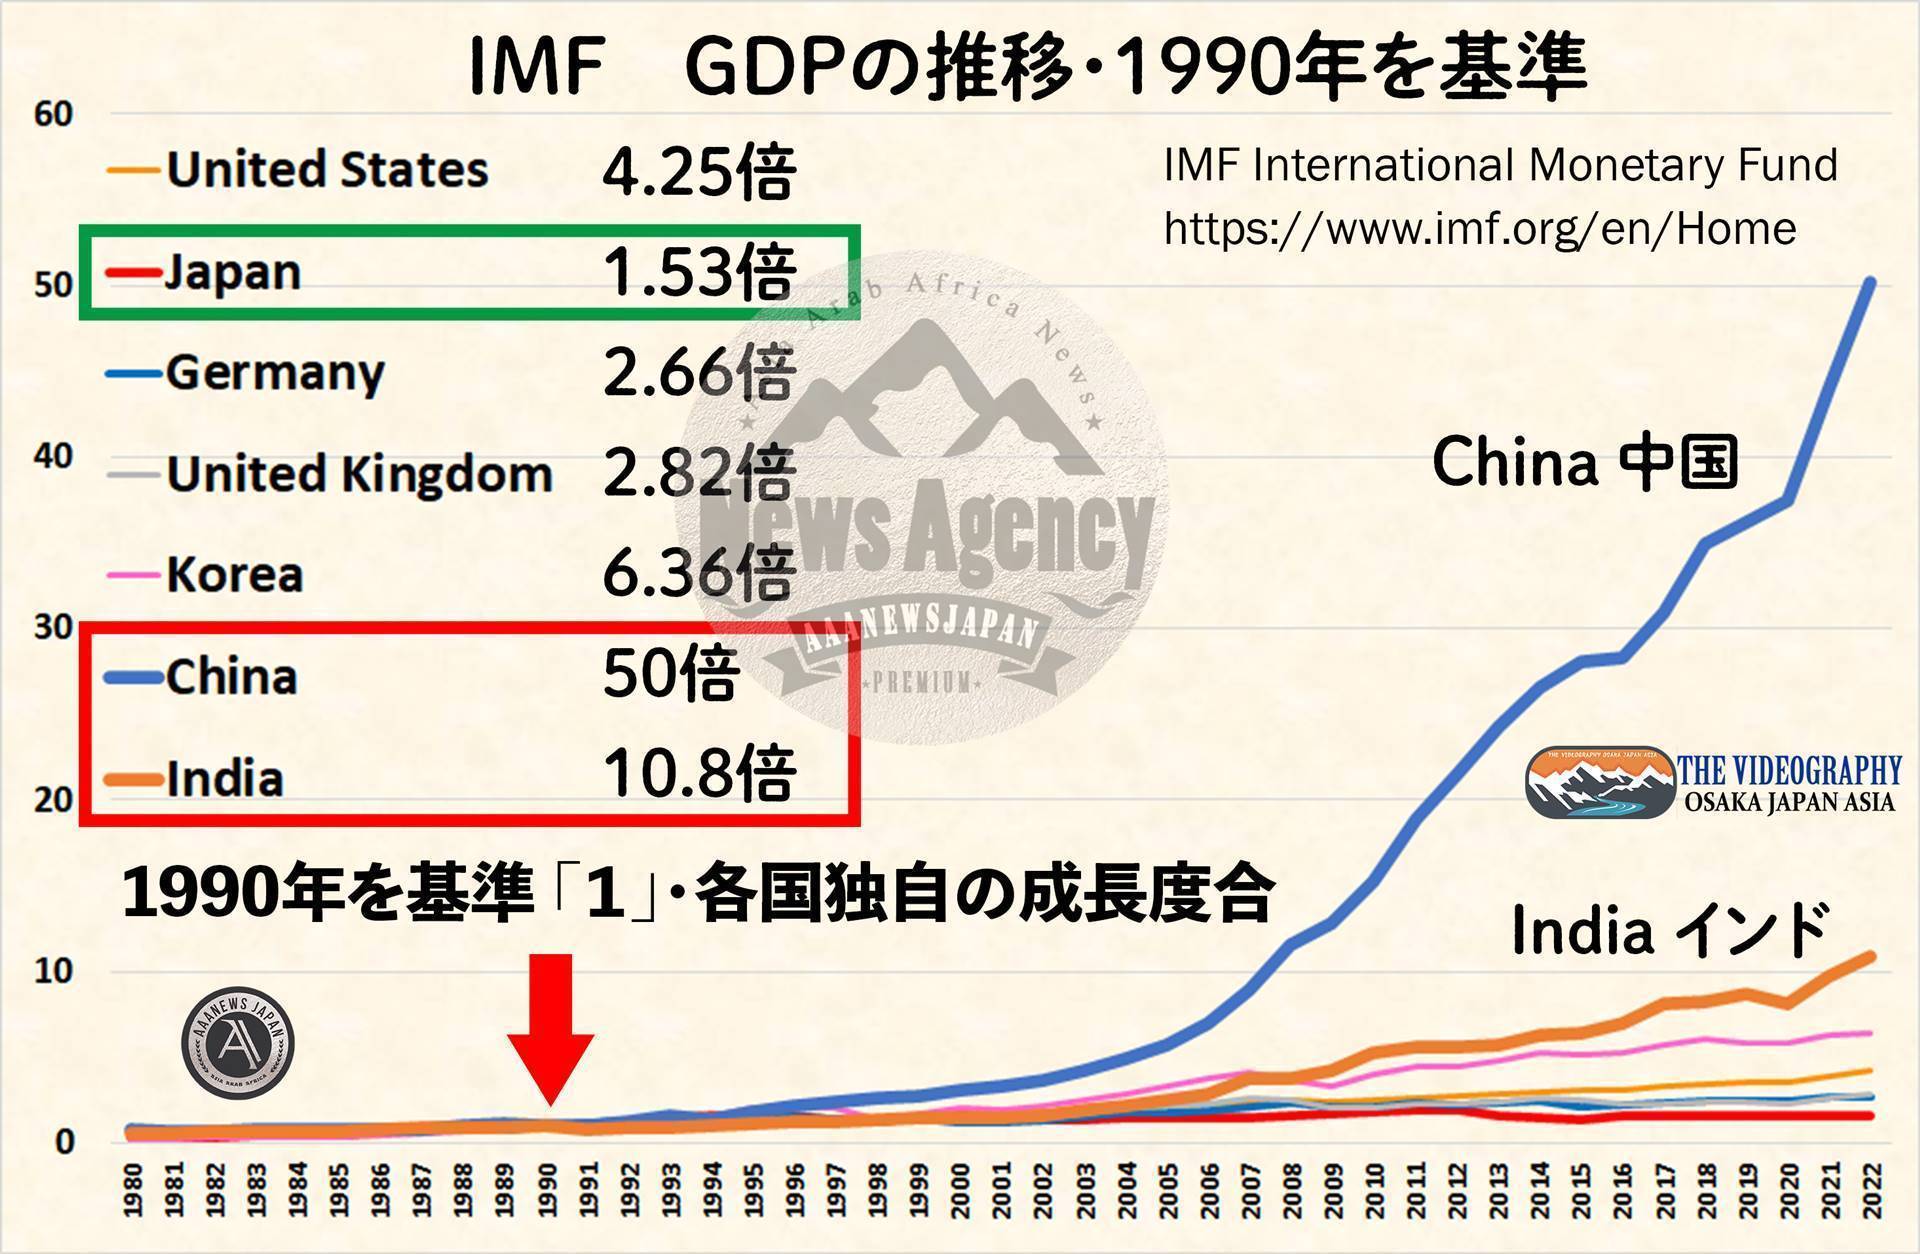 中国 50倍、インド 10倍 30年での各国GDP成長率